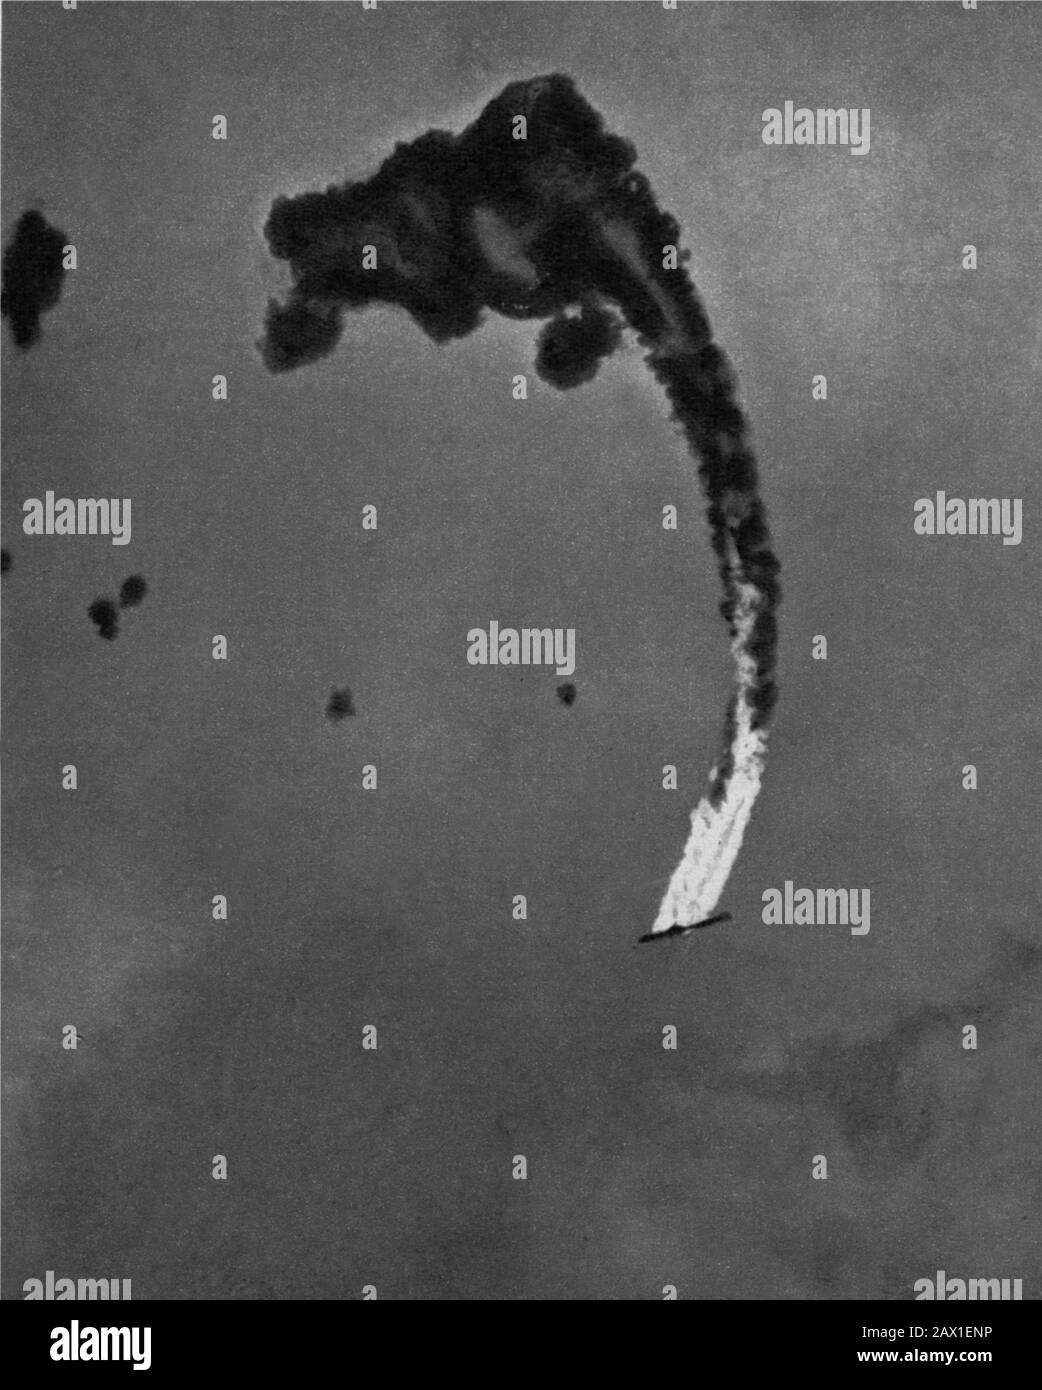 1942 , 4 june , USA : BATTLE OF MIDWAY . Un aereo bombardiere giapponese precipita in fiamme  -  WORLD WAR II - WWII - SECONDA GUERRA MONDIALE - foto storiche  storica - HISTORY PHOTOS   - Stati Uniti d' America - bombardamento - nave - Marina - Navy - mare - sea - attacco aereo - USA - GIAPPONE - GUERRA DEL PACIFICO - OCEANO - OCEAN PACIFIC - BATTAGLIA - BATTLE - aeroplano - Islands - Midway Atoll   - The Battle of Midway - HAWAY - AVIAZIONE ---- ARCHIVIO GBB Stock Photo